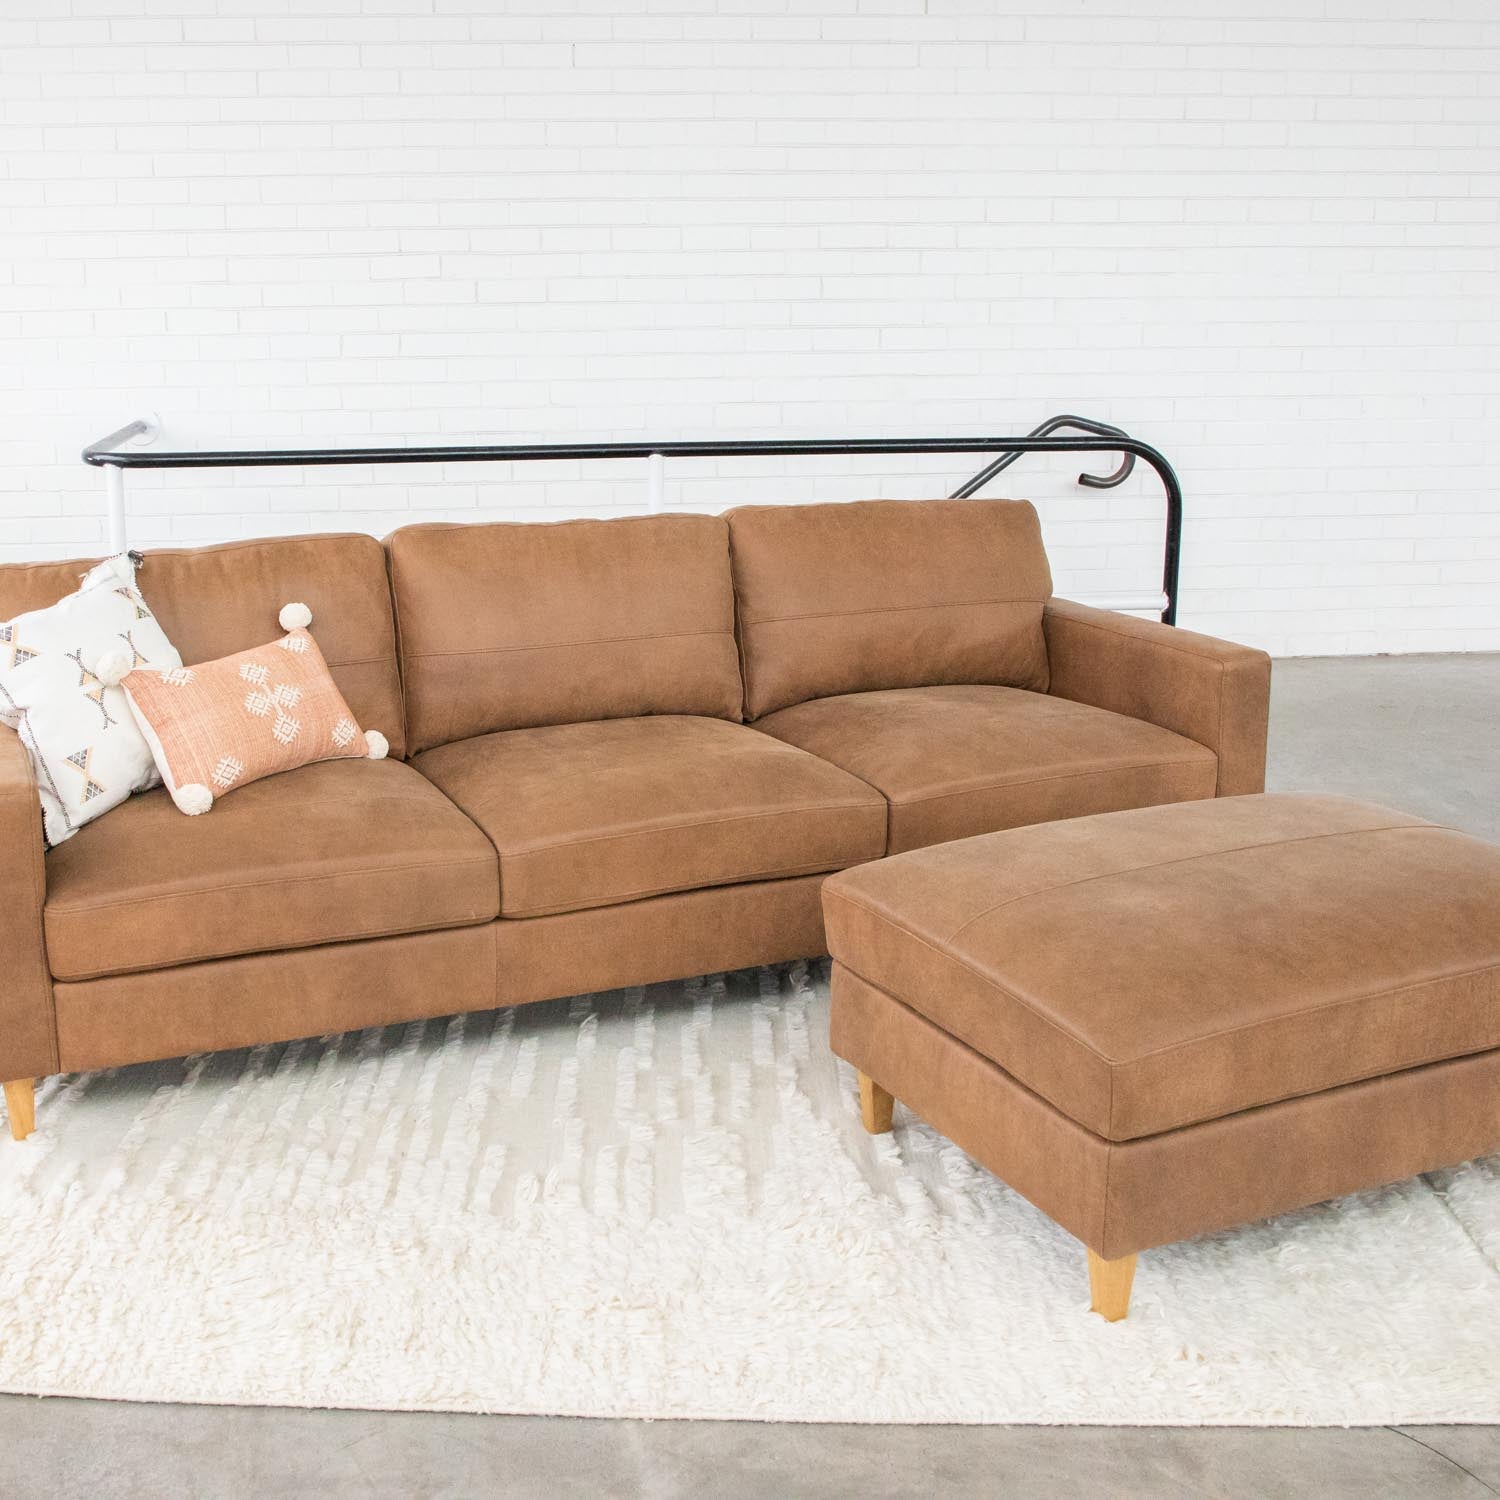 Cara Leather 3.5 Seat Sofa